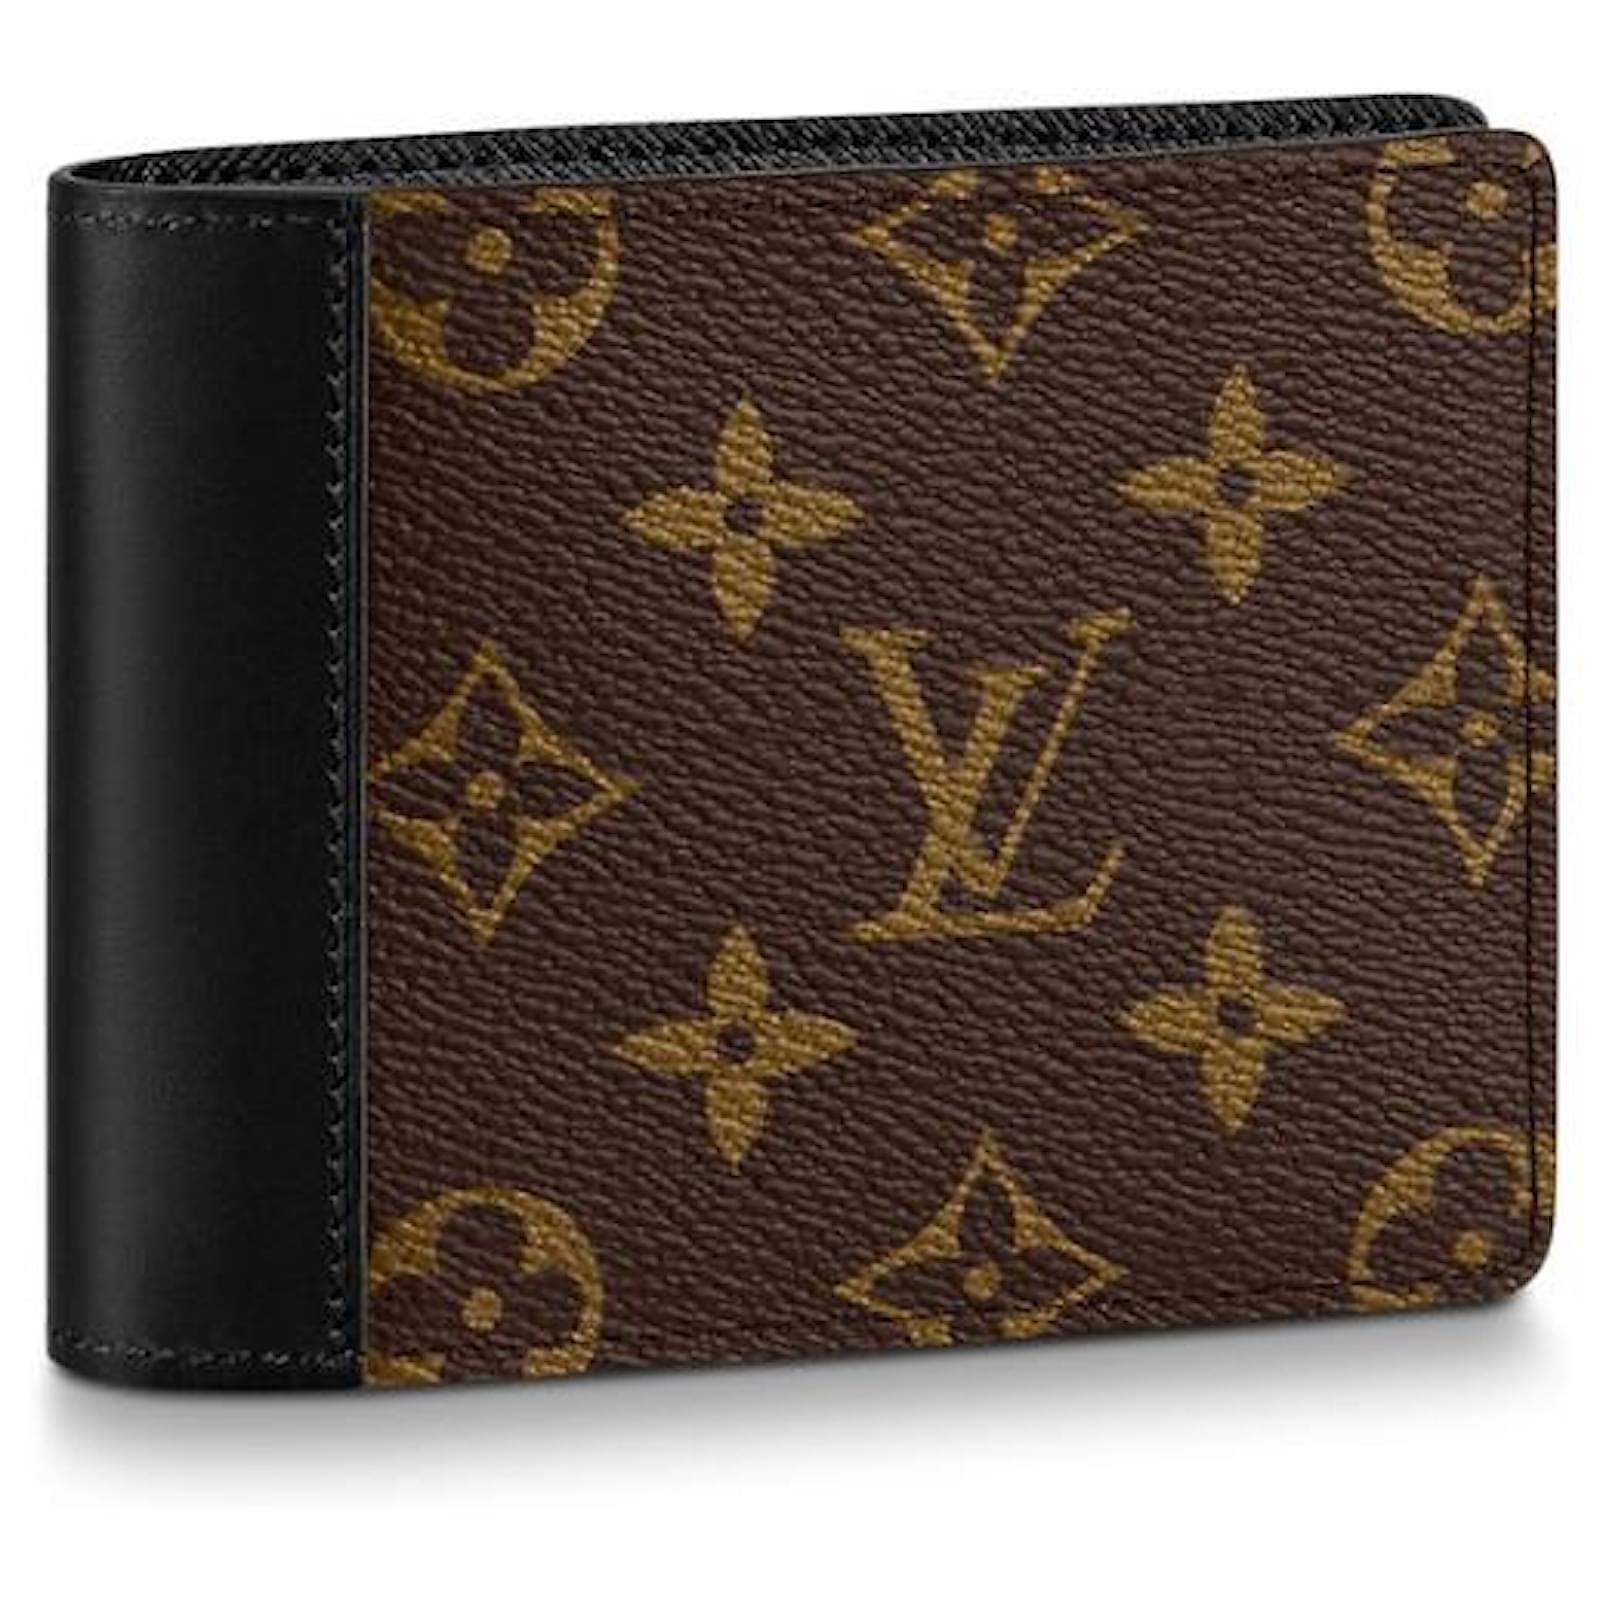 Louis Vuitton lv multiple man short wallet  Luis vuitton wallet, Lv wallet,  Louis vuitton mens bag